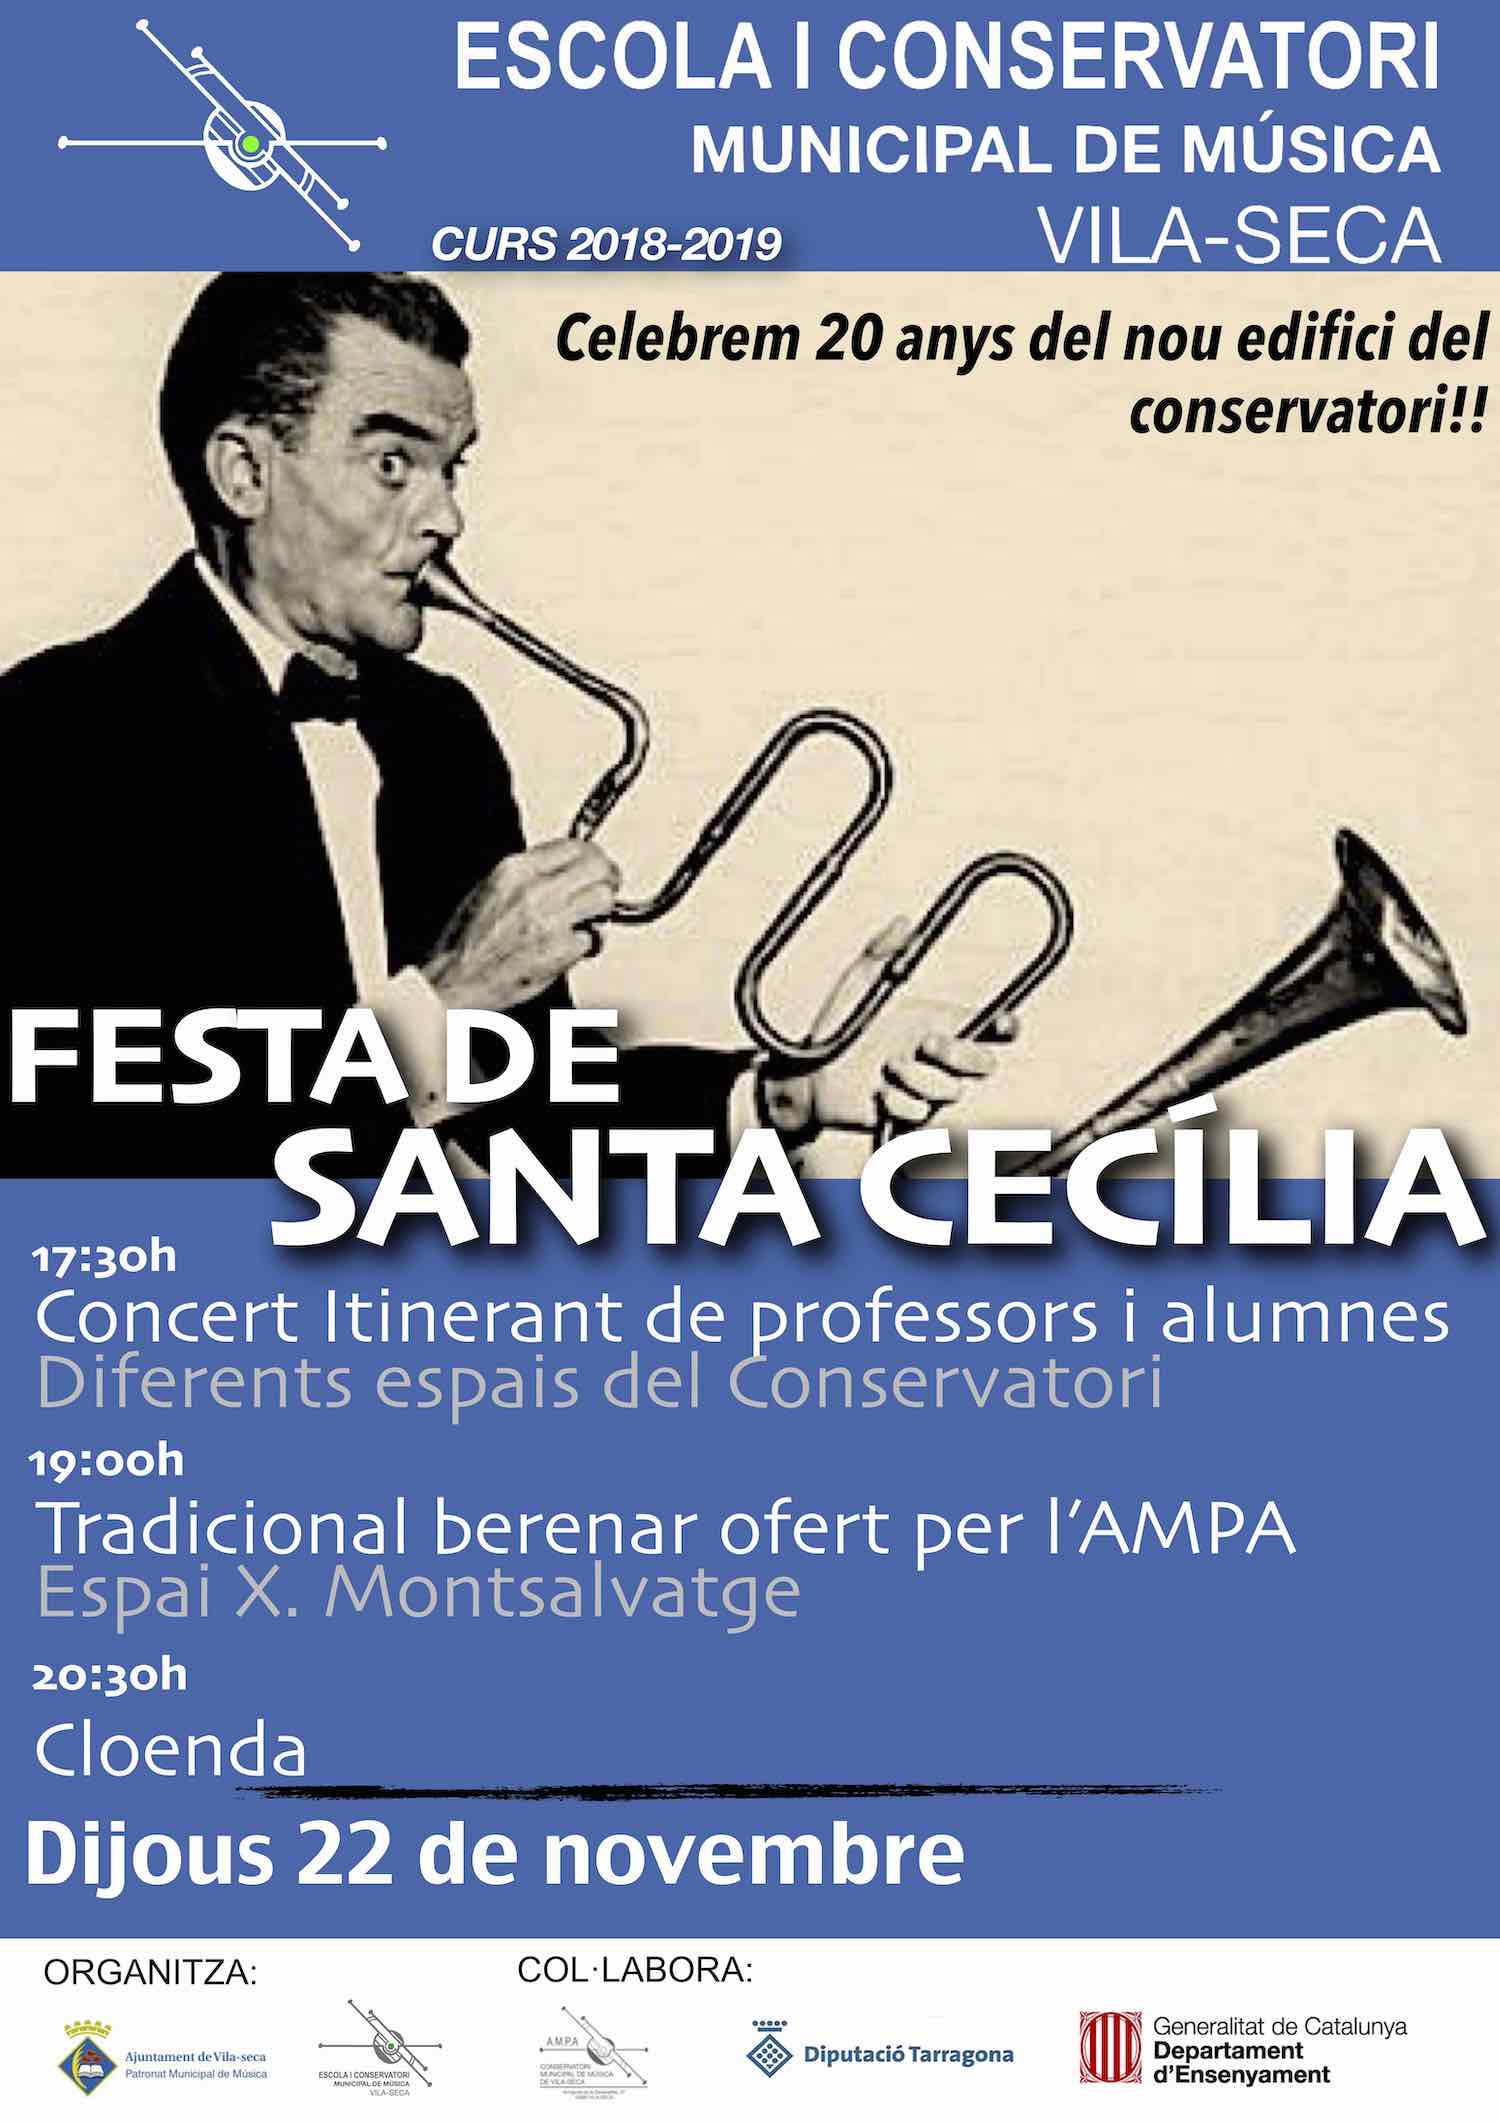 Torna el concert itinerant de la festa de Santa Cecília